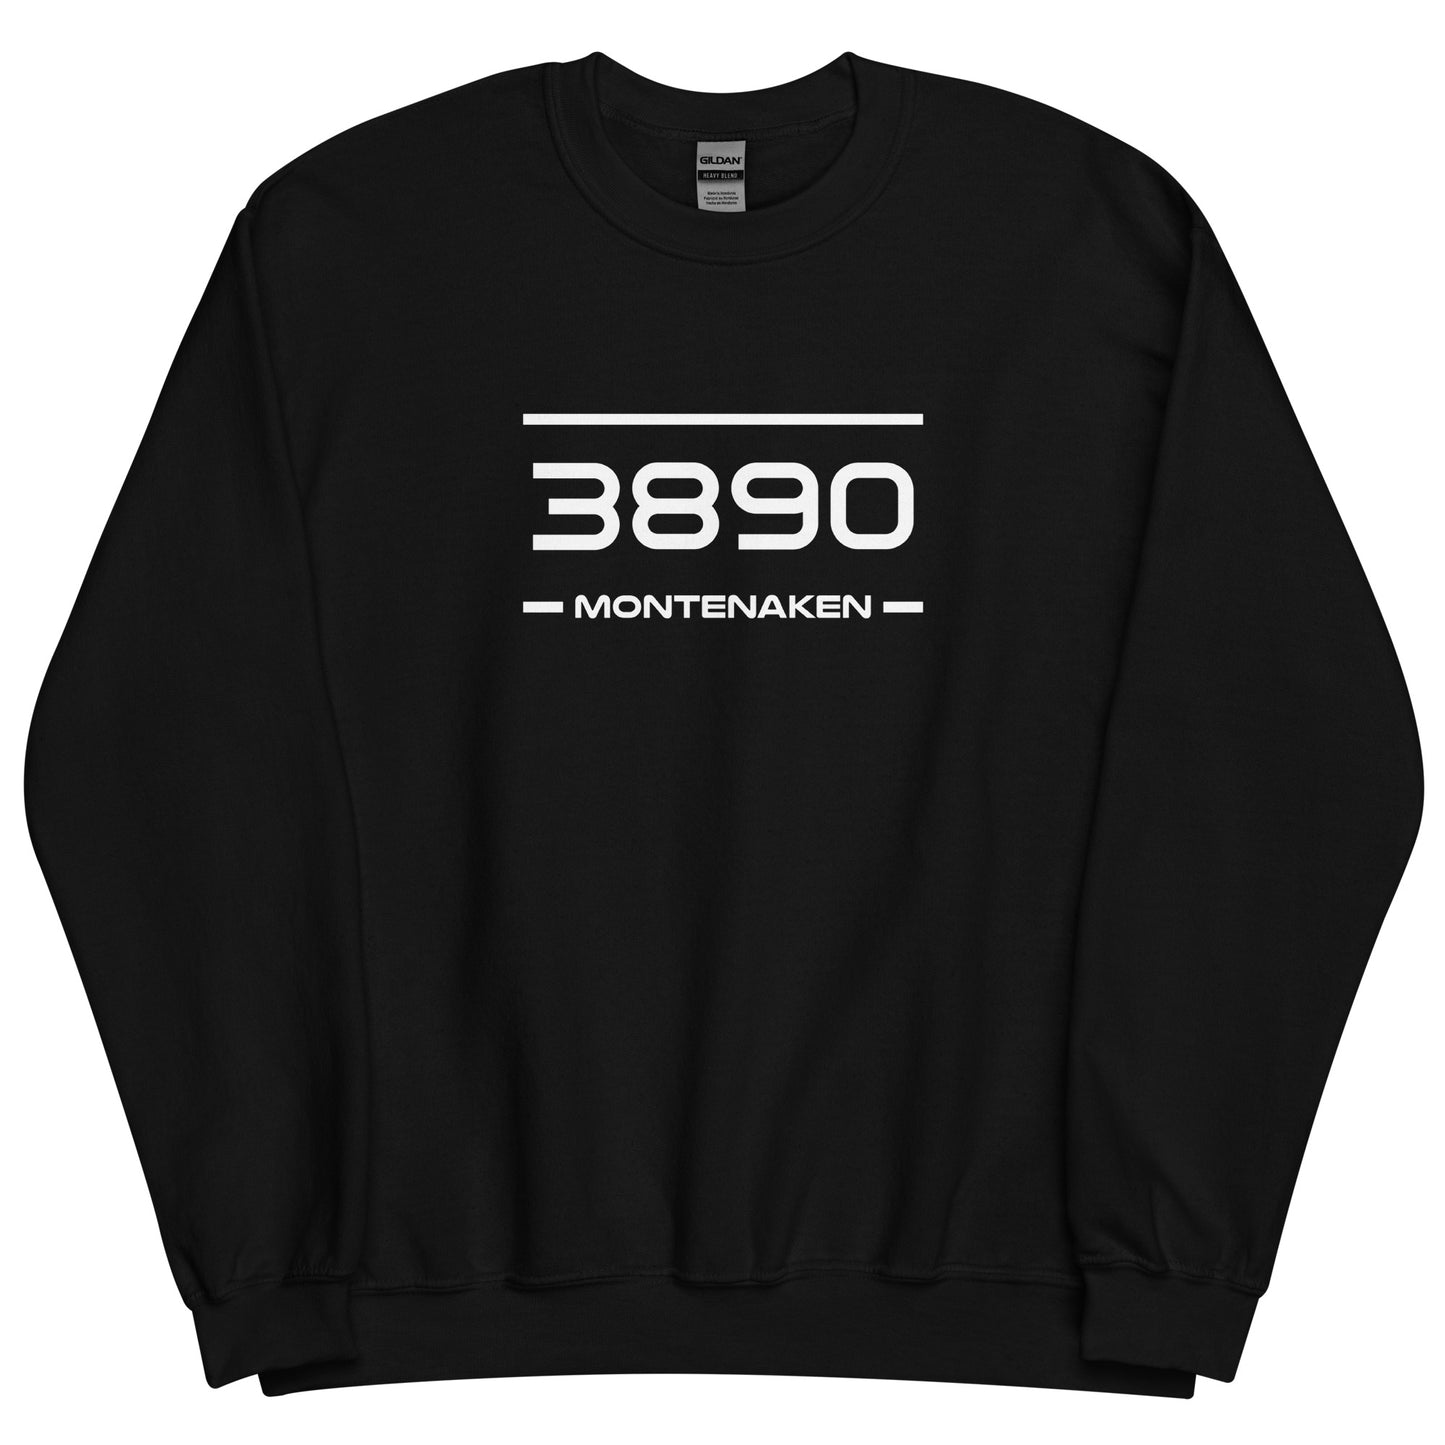 Sweater - 3890 - Montenaken (M/V)